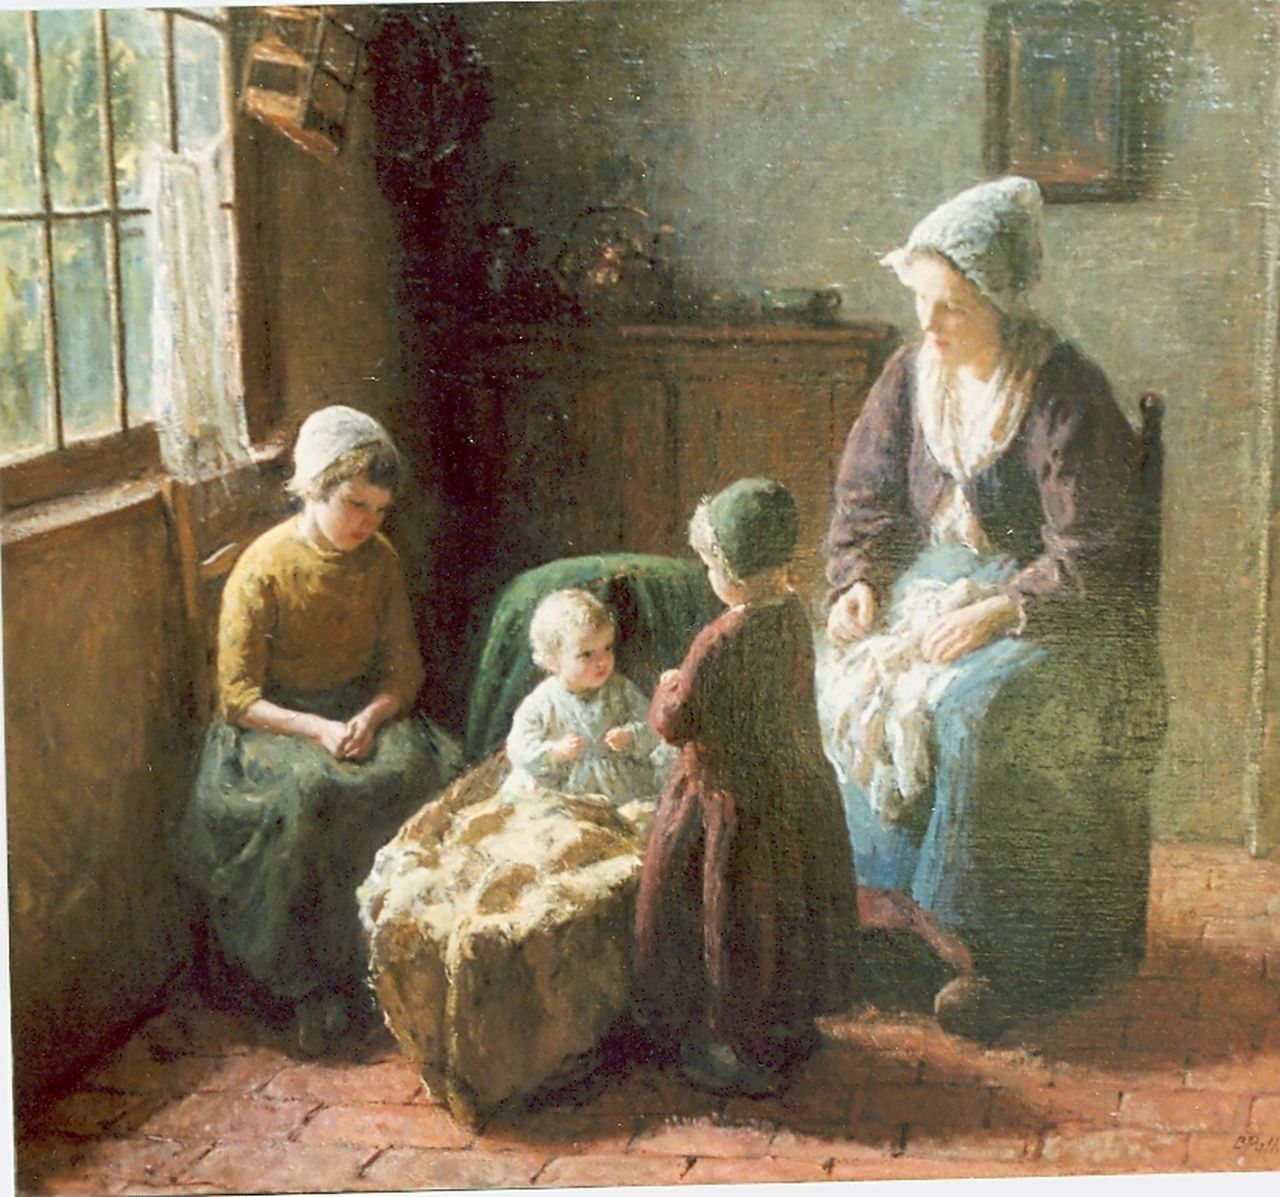 Pothast B.J.C.  | 'Bernard' Jean Corneille Pothast, Interior with mother and children, Öl auf Leinwand 71,0 x 81,5 cm, signed l.r.